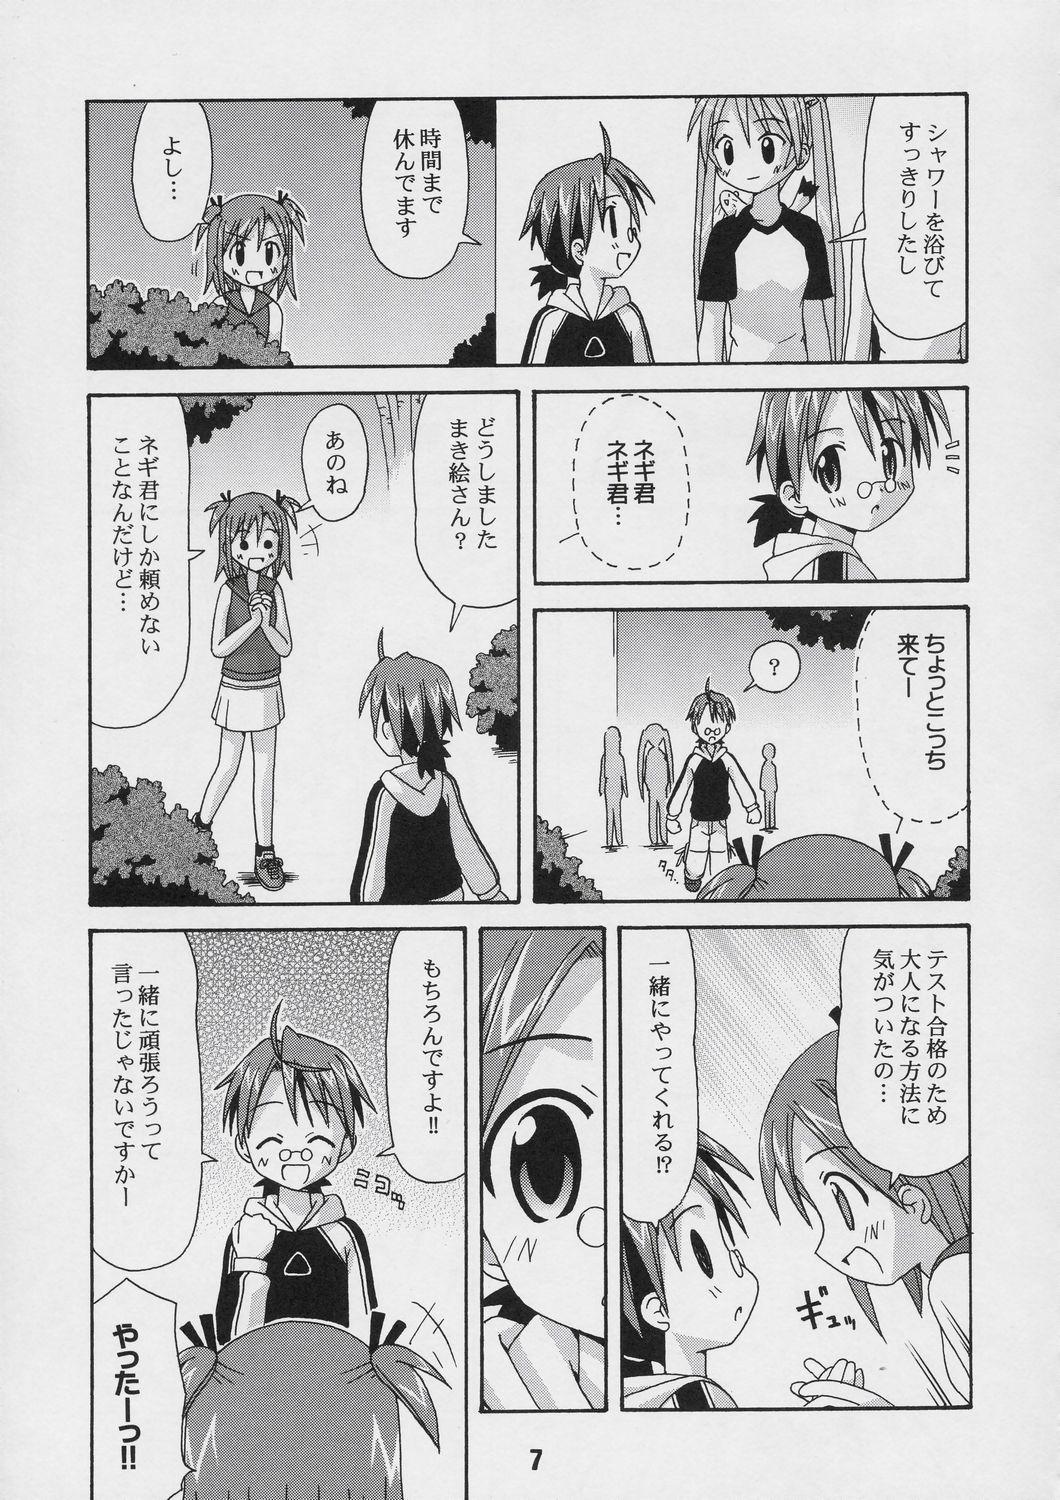 Emo Gay Negina. 4 - Mahou sensei negima Cheating - Page 6